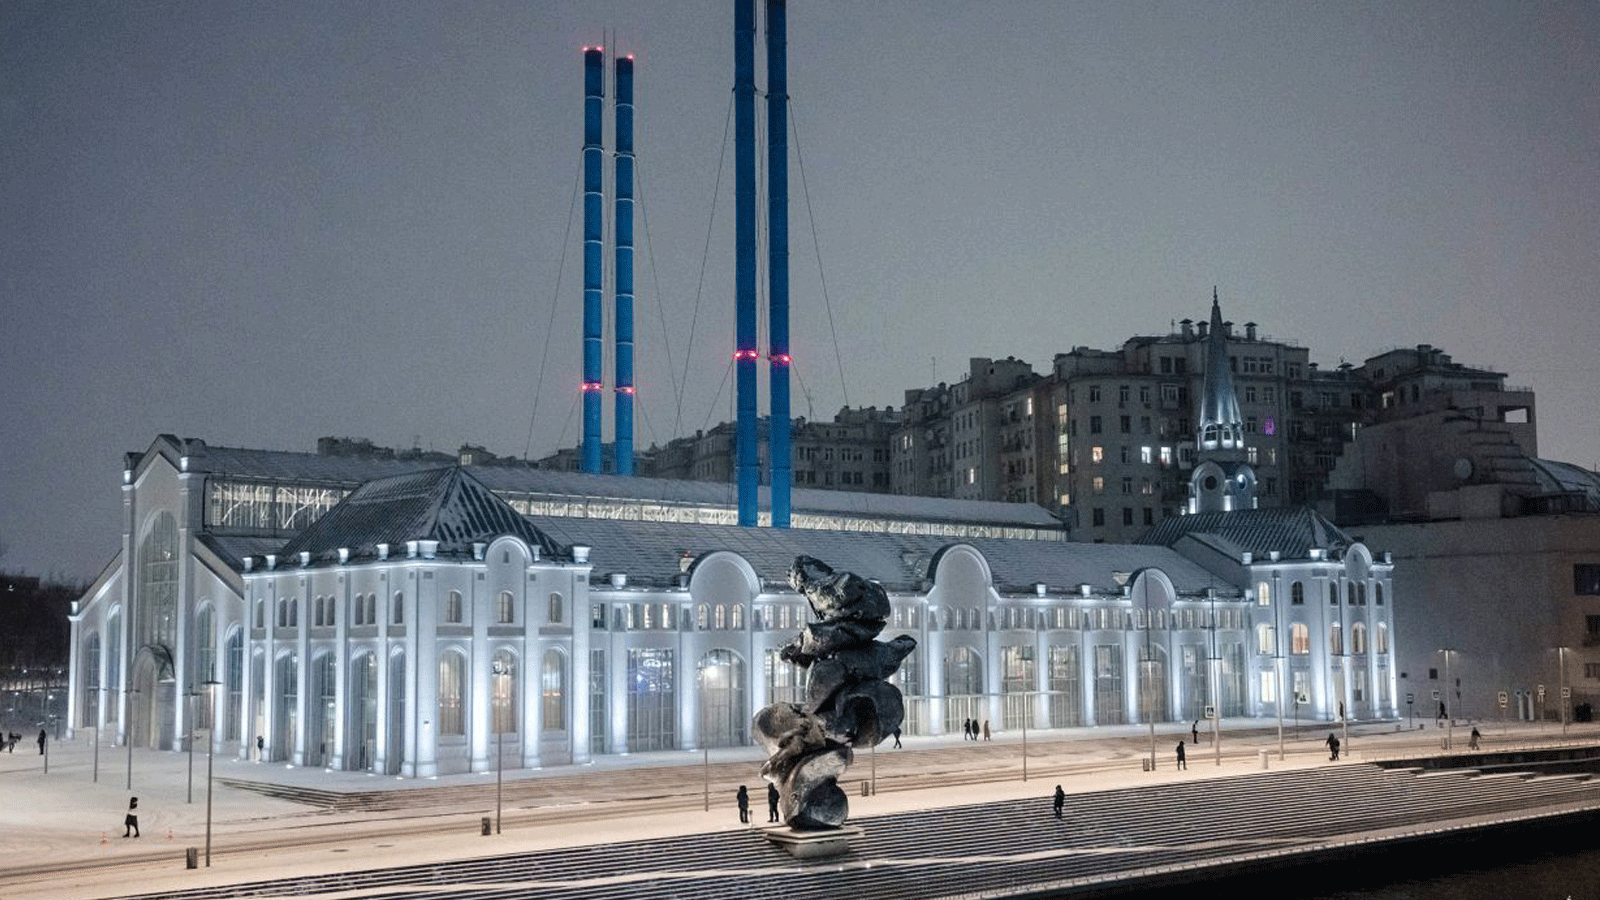 تصميم مركز الفنون GES-2 على ضفاف نهر موسكفا المتعرج عبر وسط العاصمة الروسية الذي تم من قبل المهندس المعماري الإيطالي الشهير رينزو بيانو، ويعد بإيواء أكبر الأسماء العالمية والنجوم الروس.